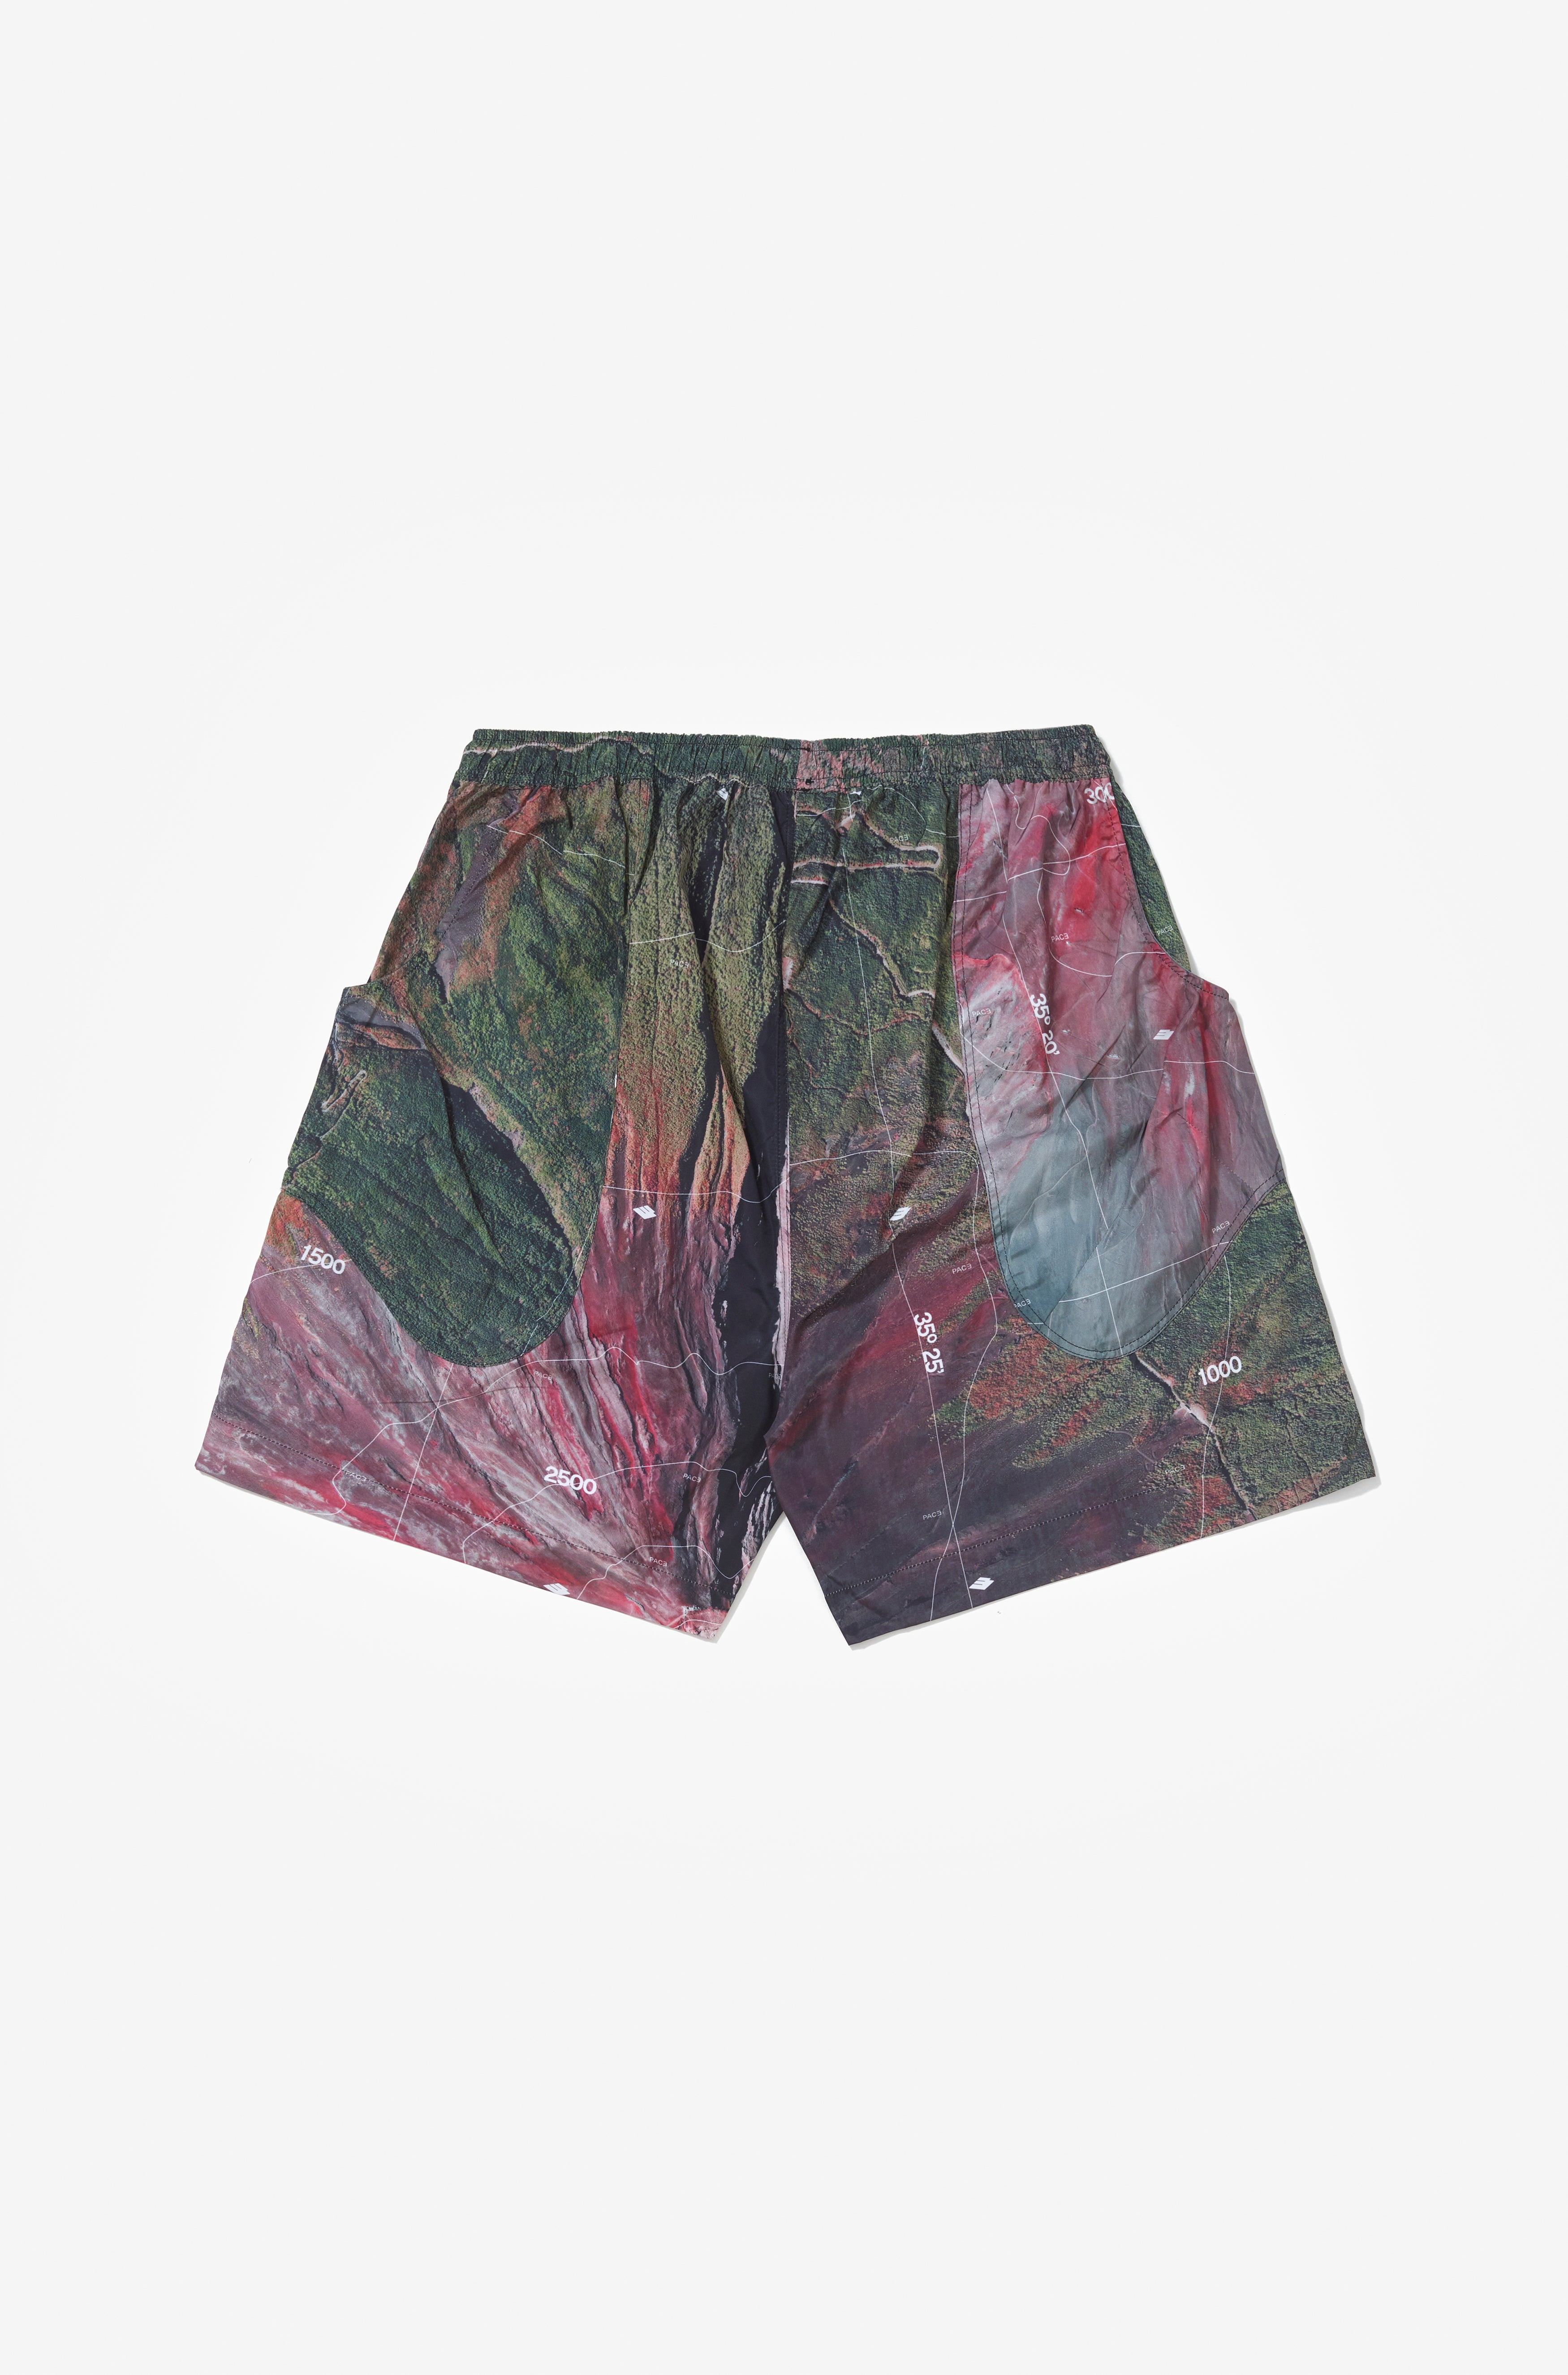 Monte Fuji Tatical Shorts